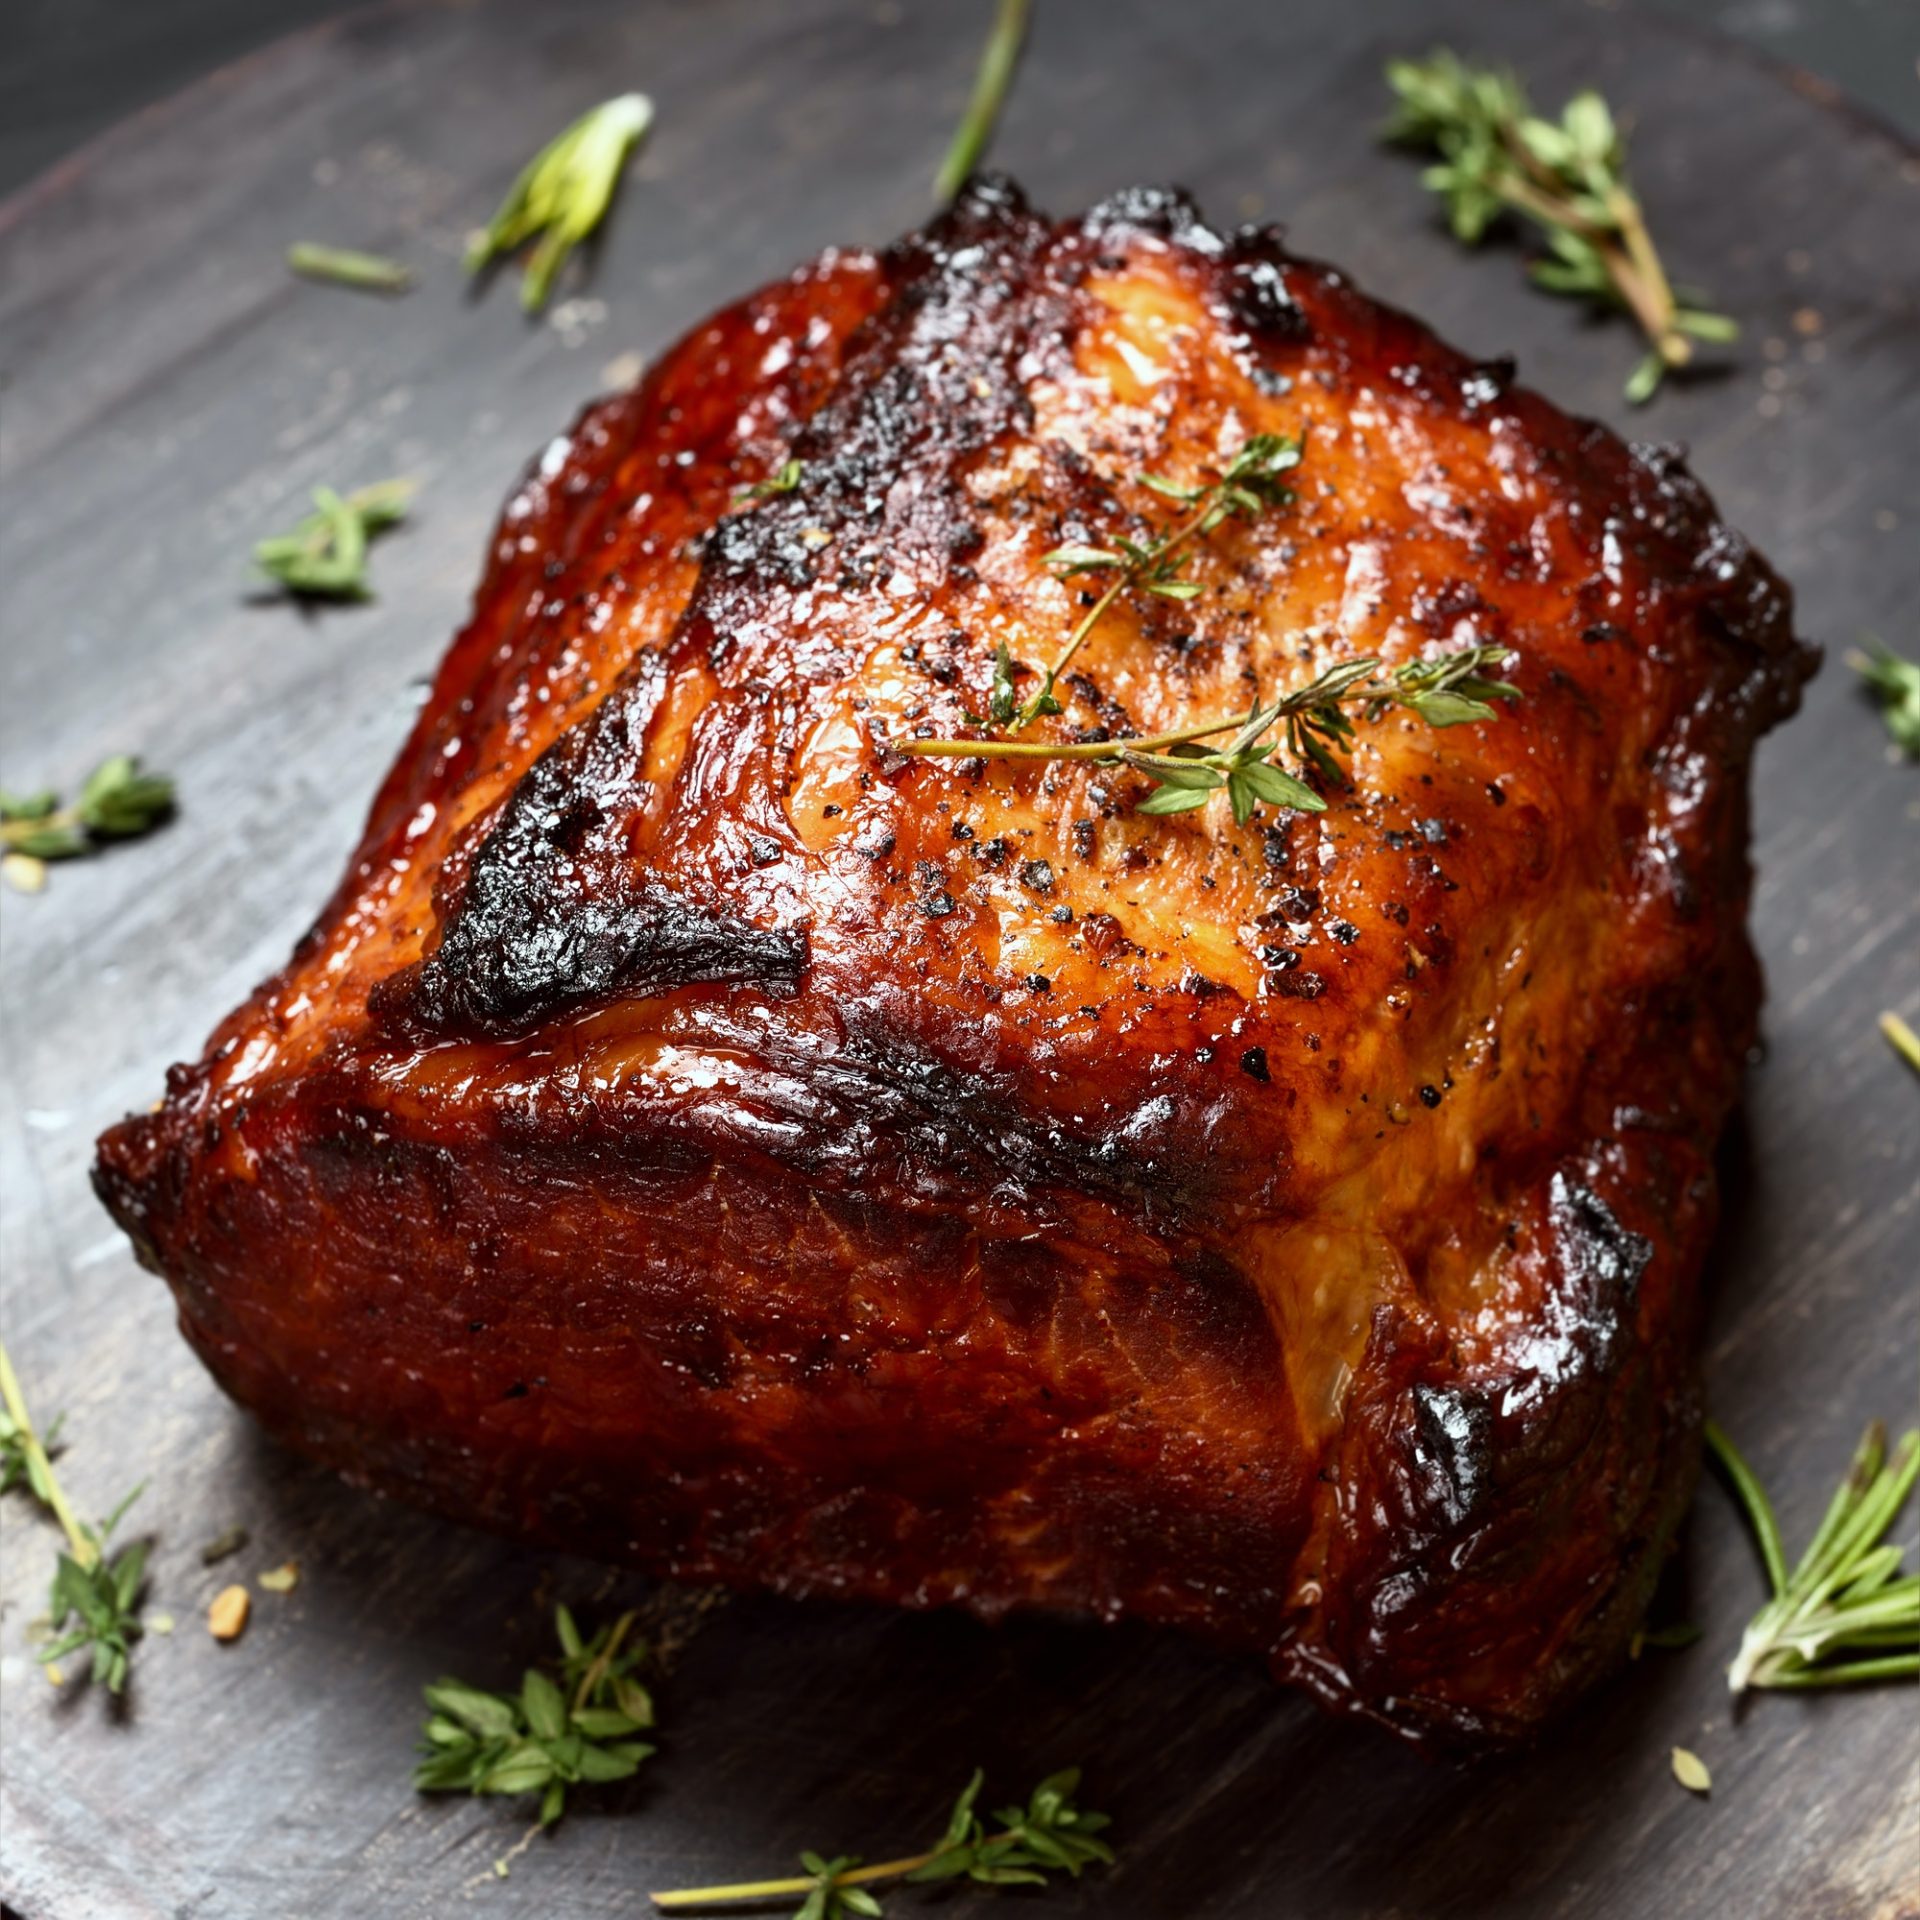 Grilled pork on wooden board